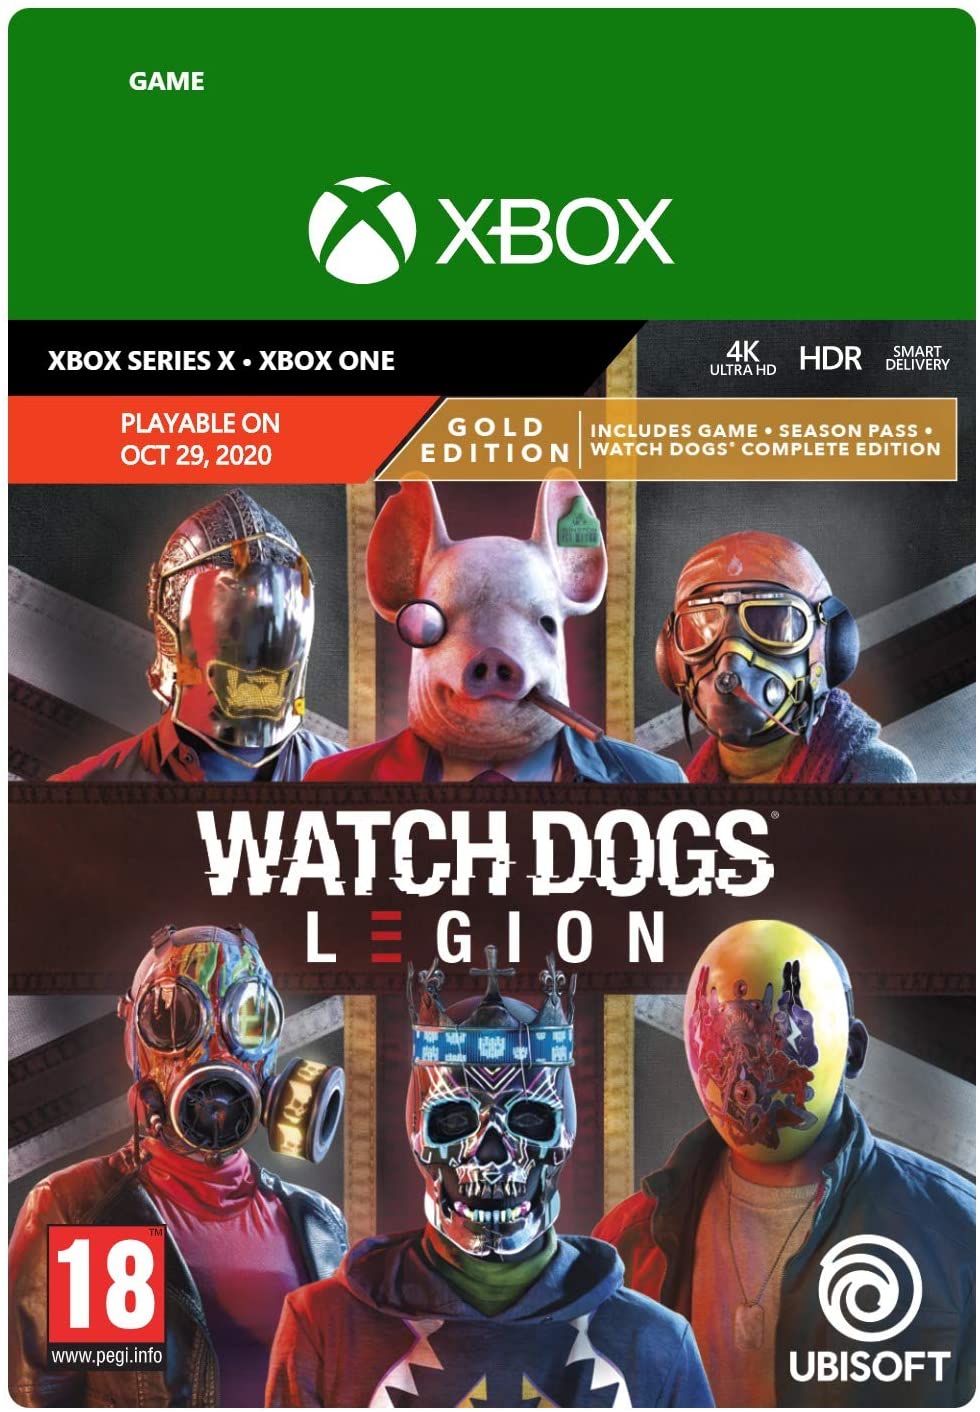 Watch Dogs Legion Gold Edition Digital Download Key (Xbox One/Series X): United Kingdom - 